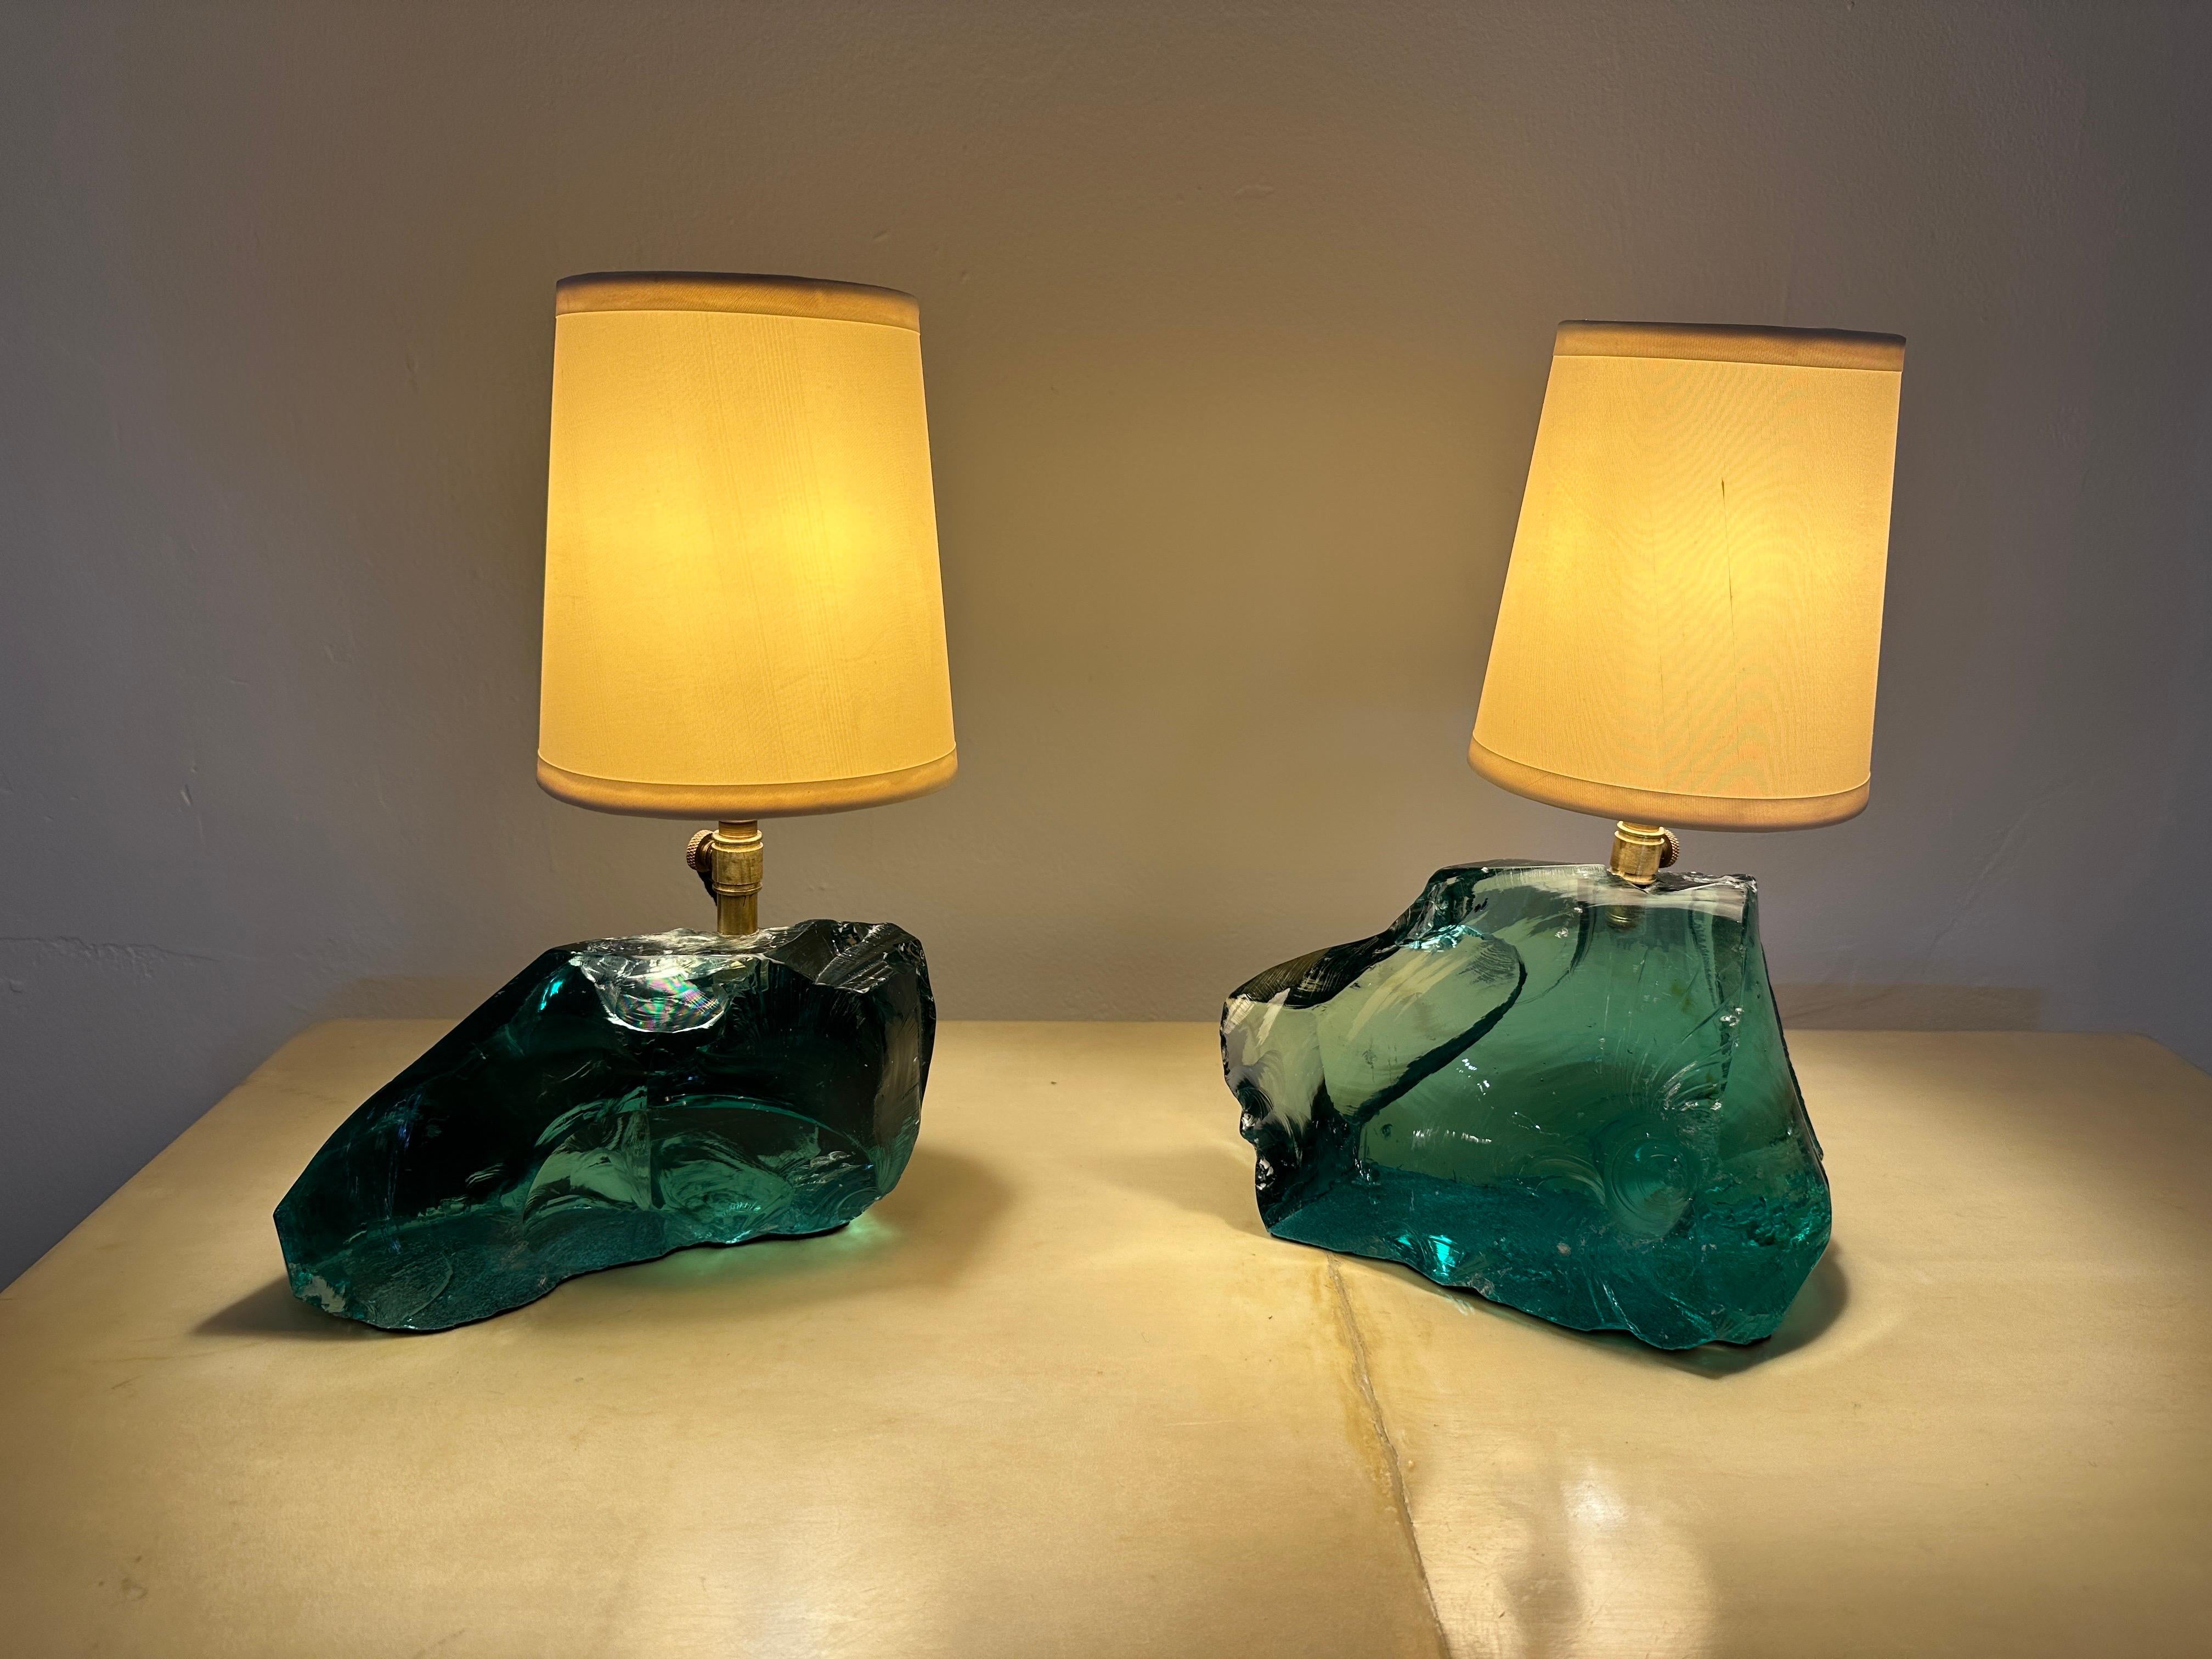 Dans le goût de JMF, Gustavo Olivieri a conçu ces lampes sur mesure avec des morceaux de verre de scories vert aqua et des abat-jours vintage.  CET ARTICLE EST SITUÉ ET SERA EXPÉDIÉ DEPUIS NOTRE SHOWROOM DE MIAMI, FLORIDE.